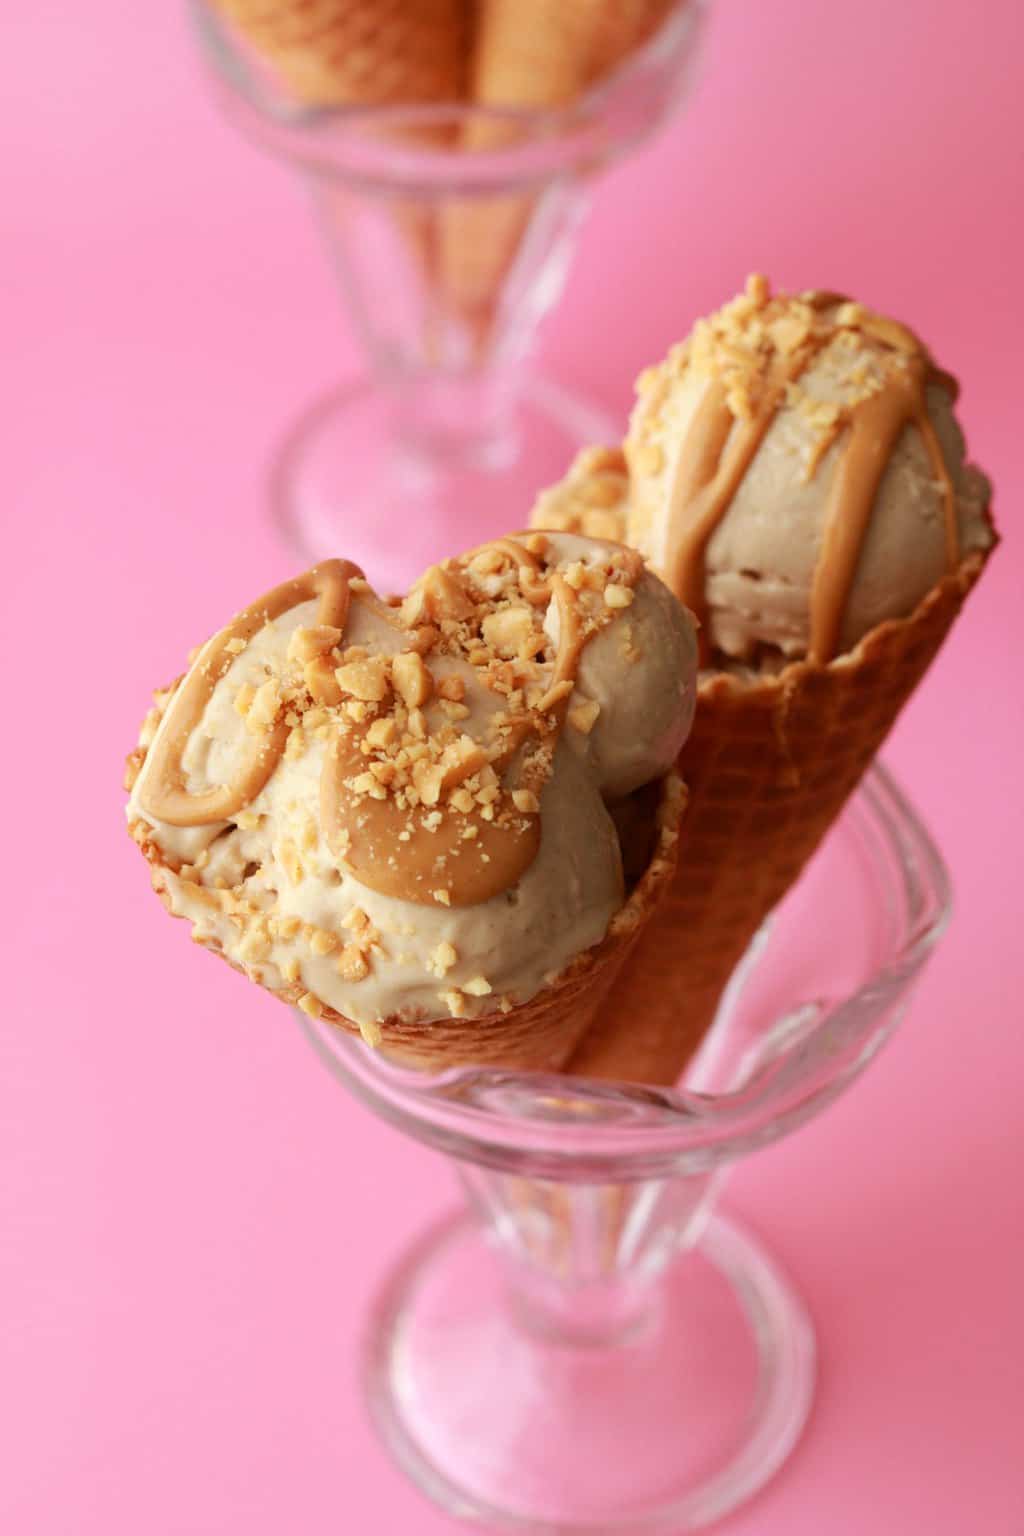 Peanut butter ice cream cones in sundae glasses. 